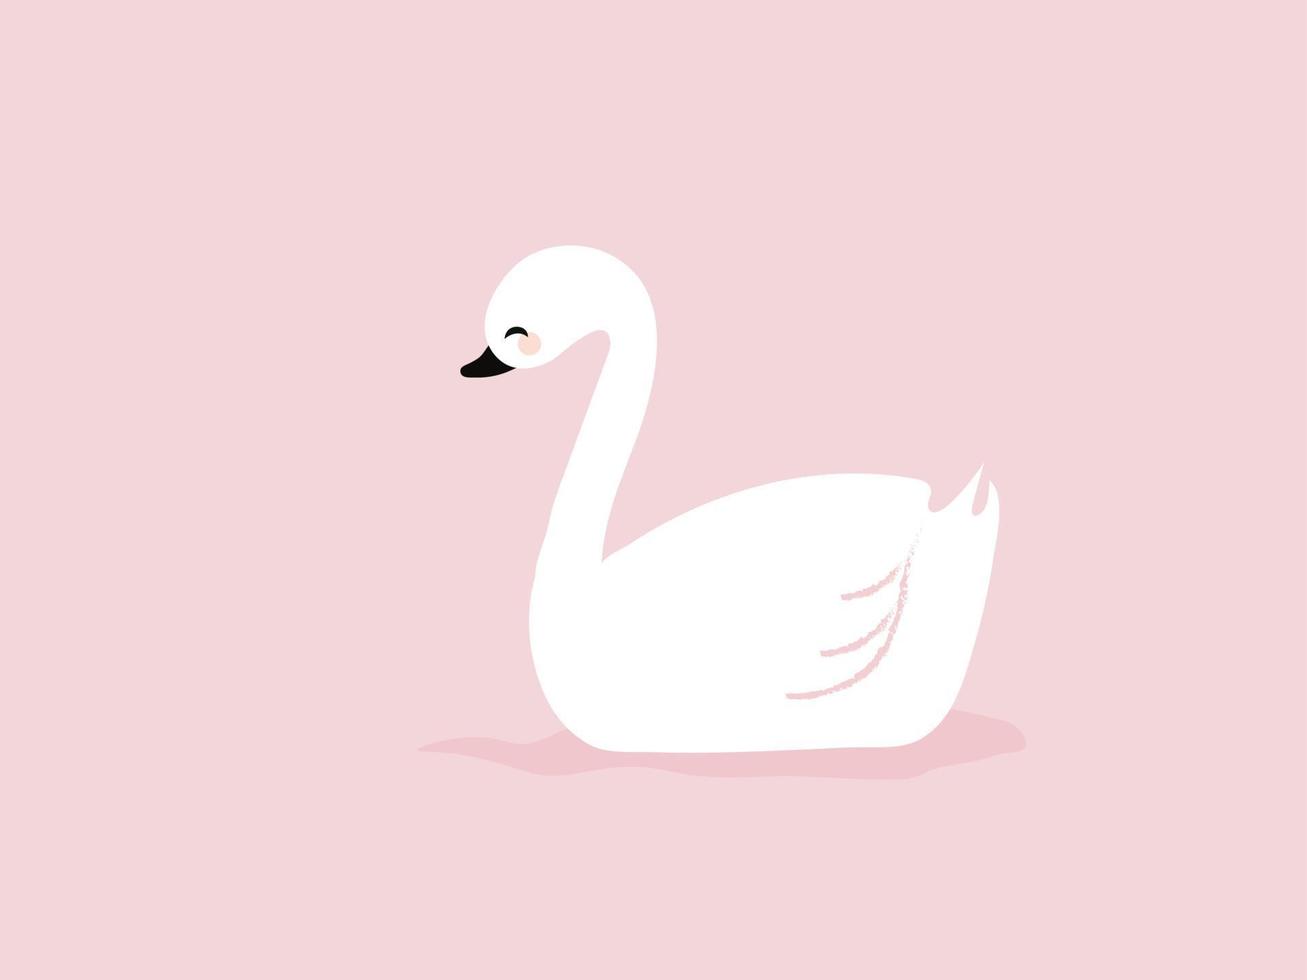 Cisne blanco, ilustración, vector sobre fondo blanco.